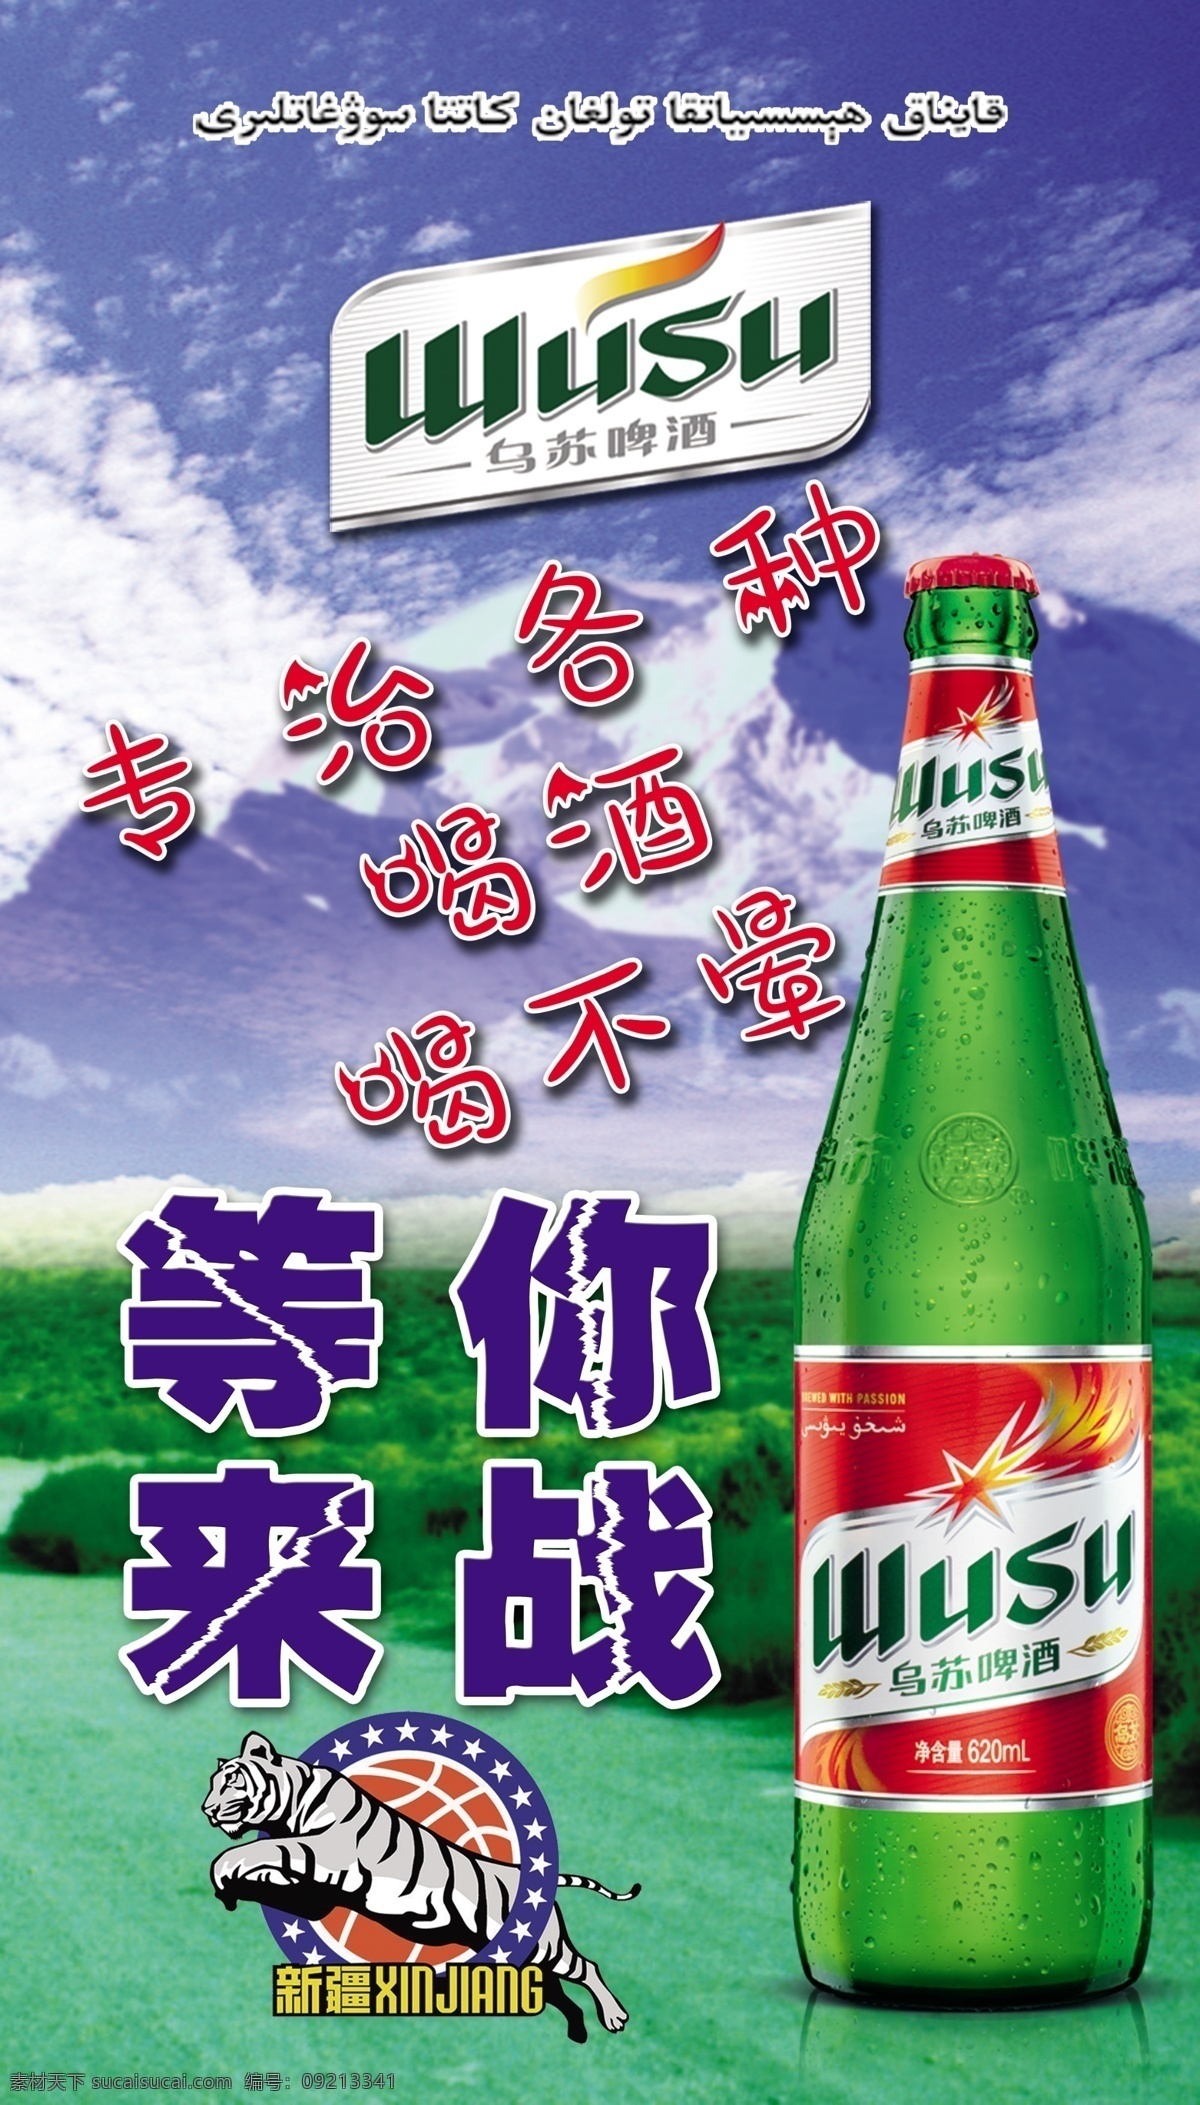 乌苏啤酒图片 乌苏 宣传 啤酒 展板 红乌苏 室内广告设计